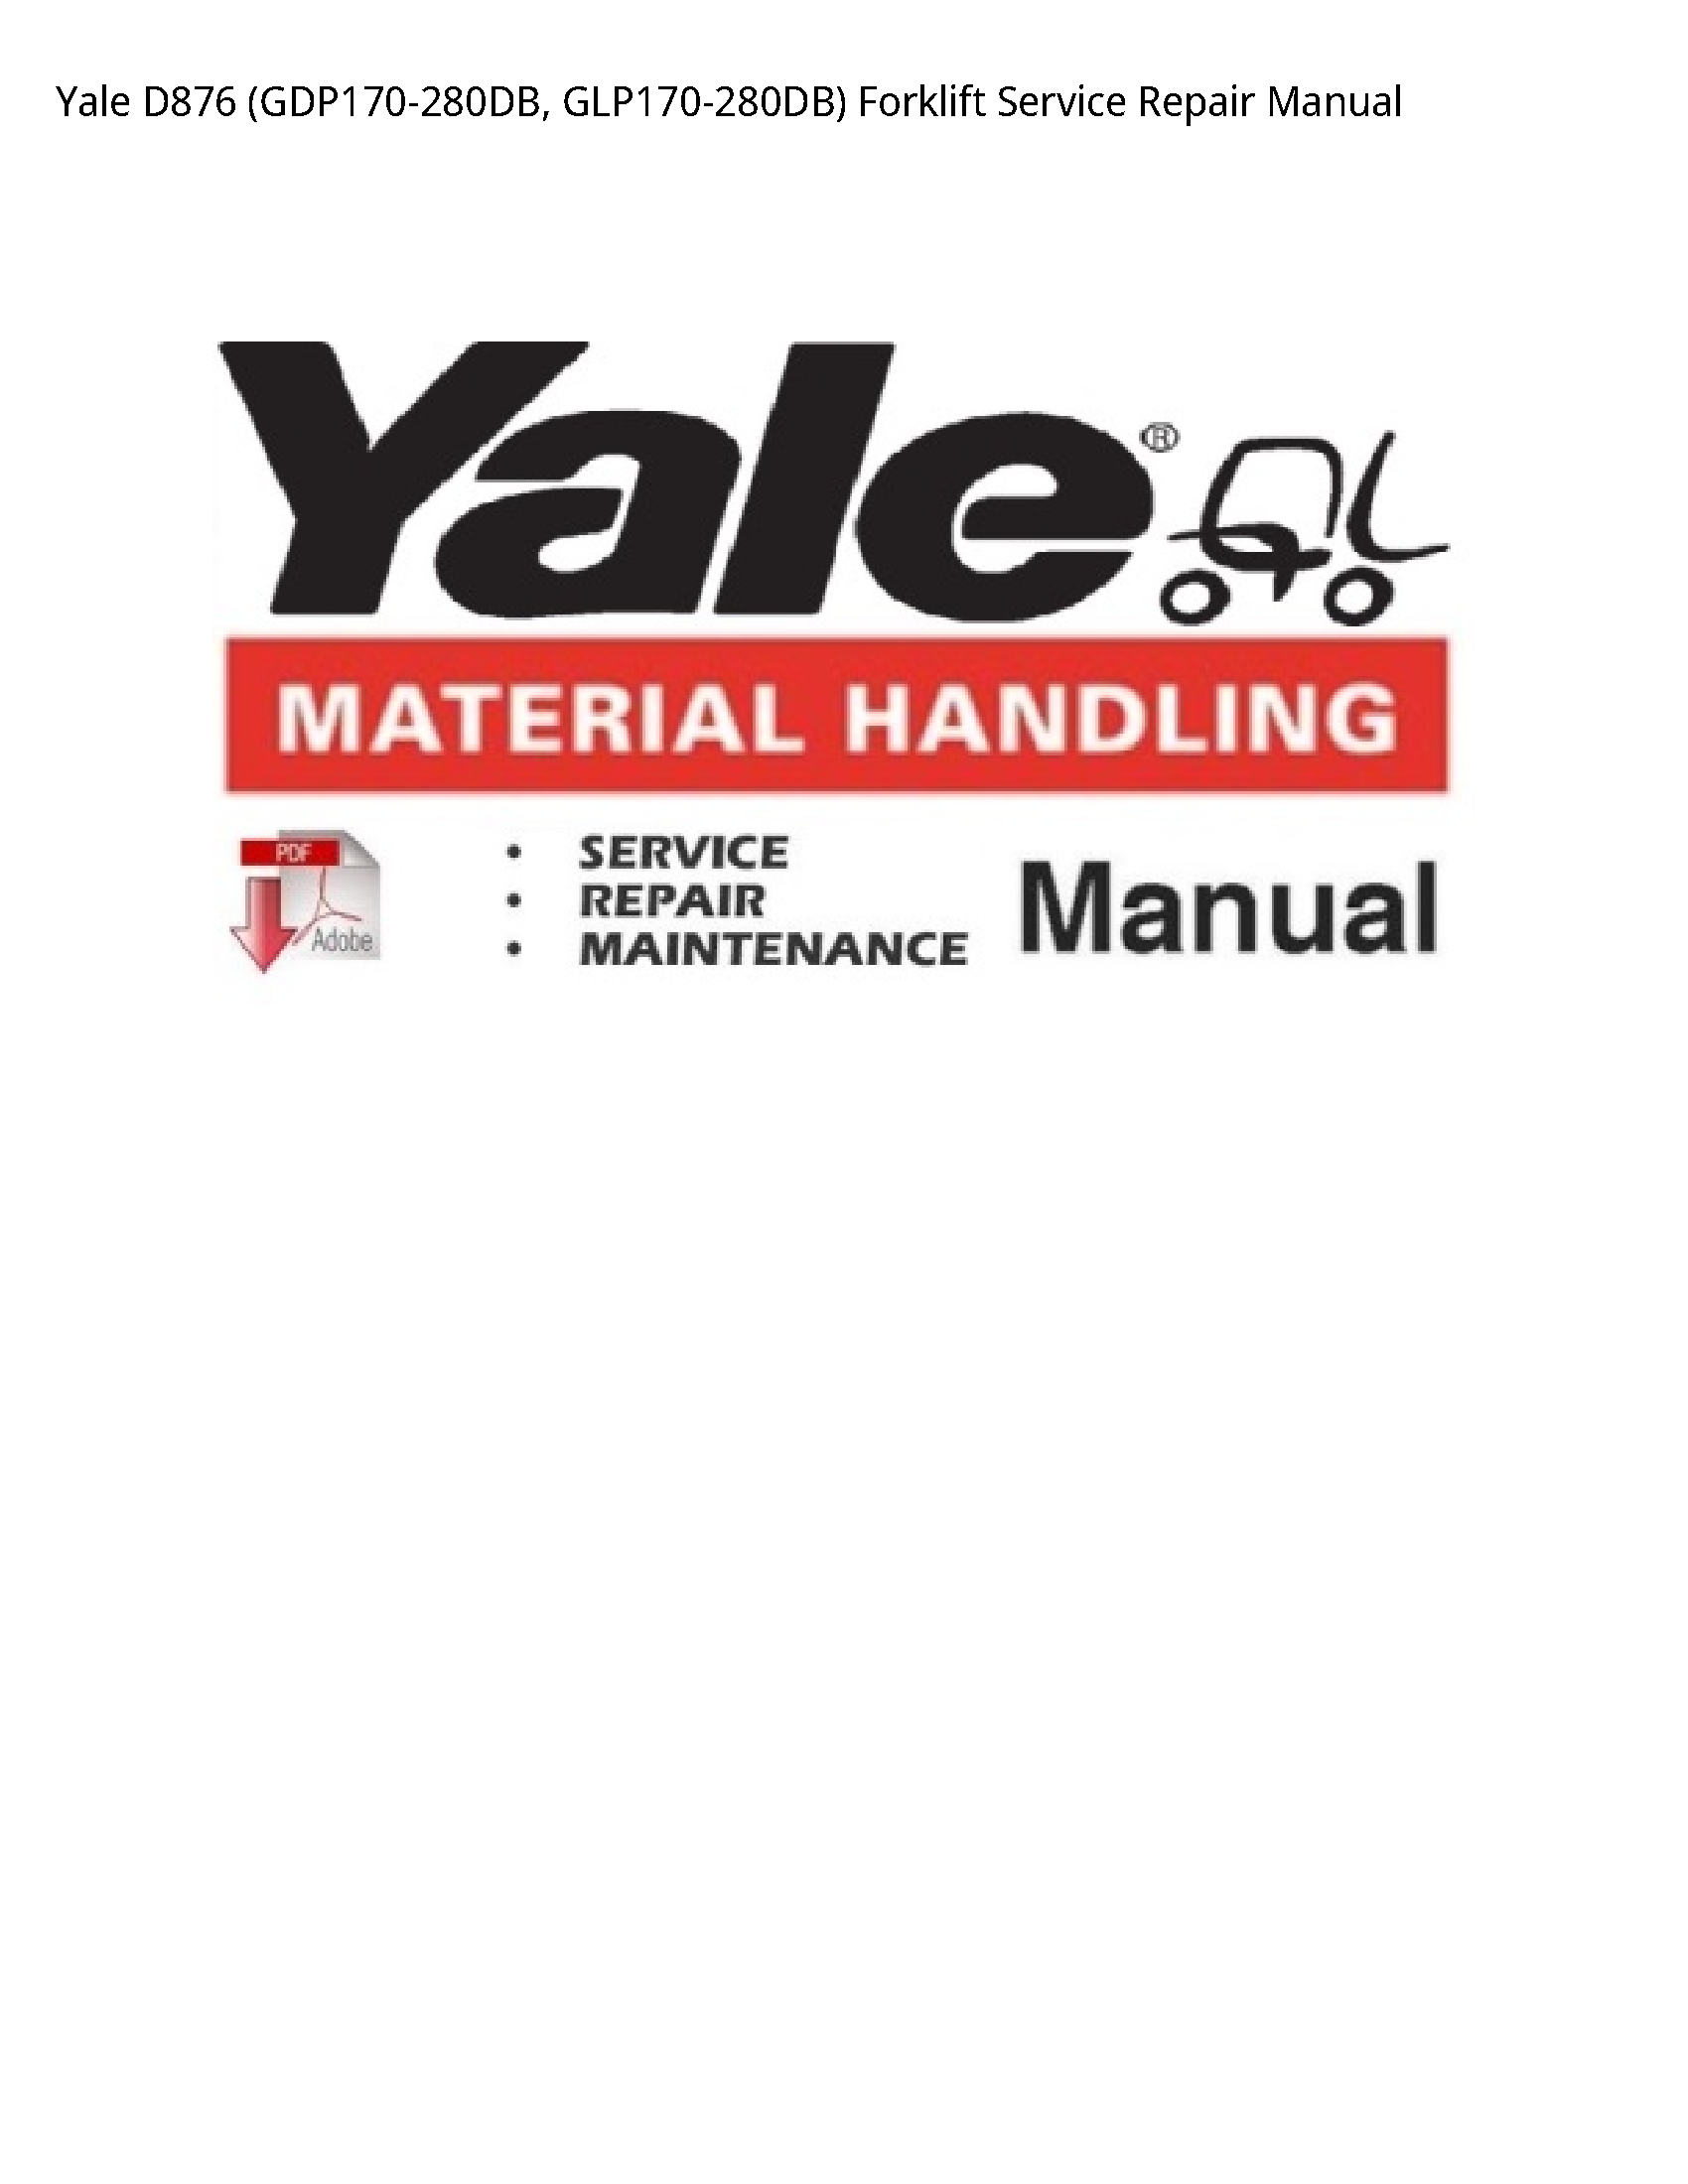 Yale D876 Forklift manual